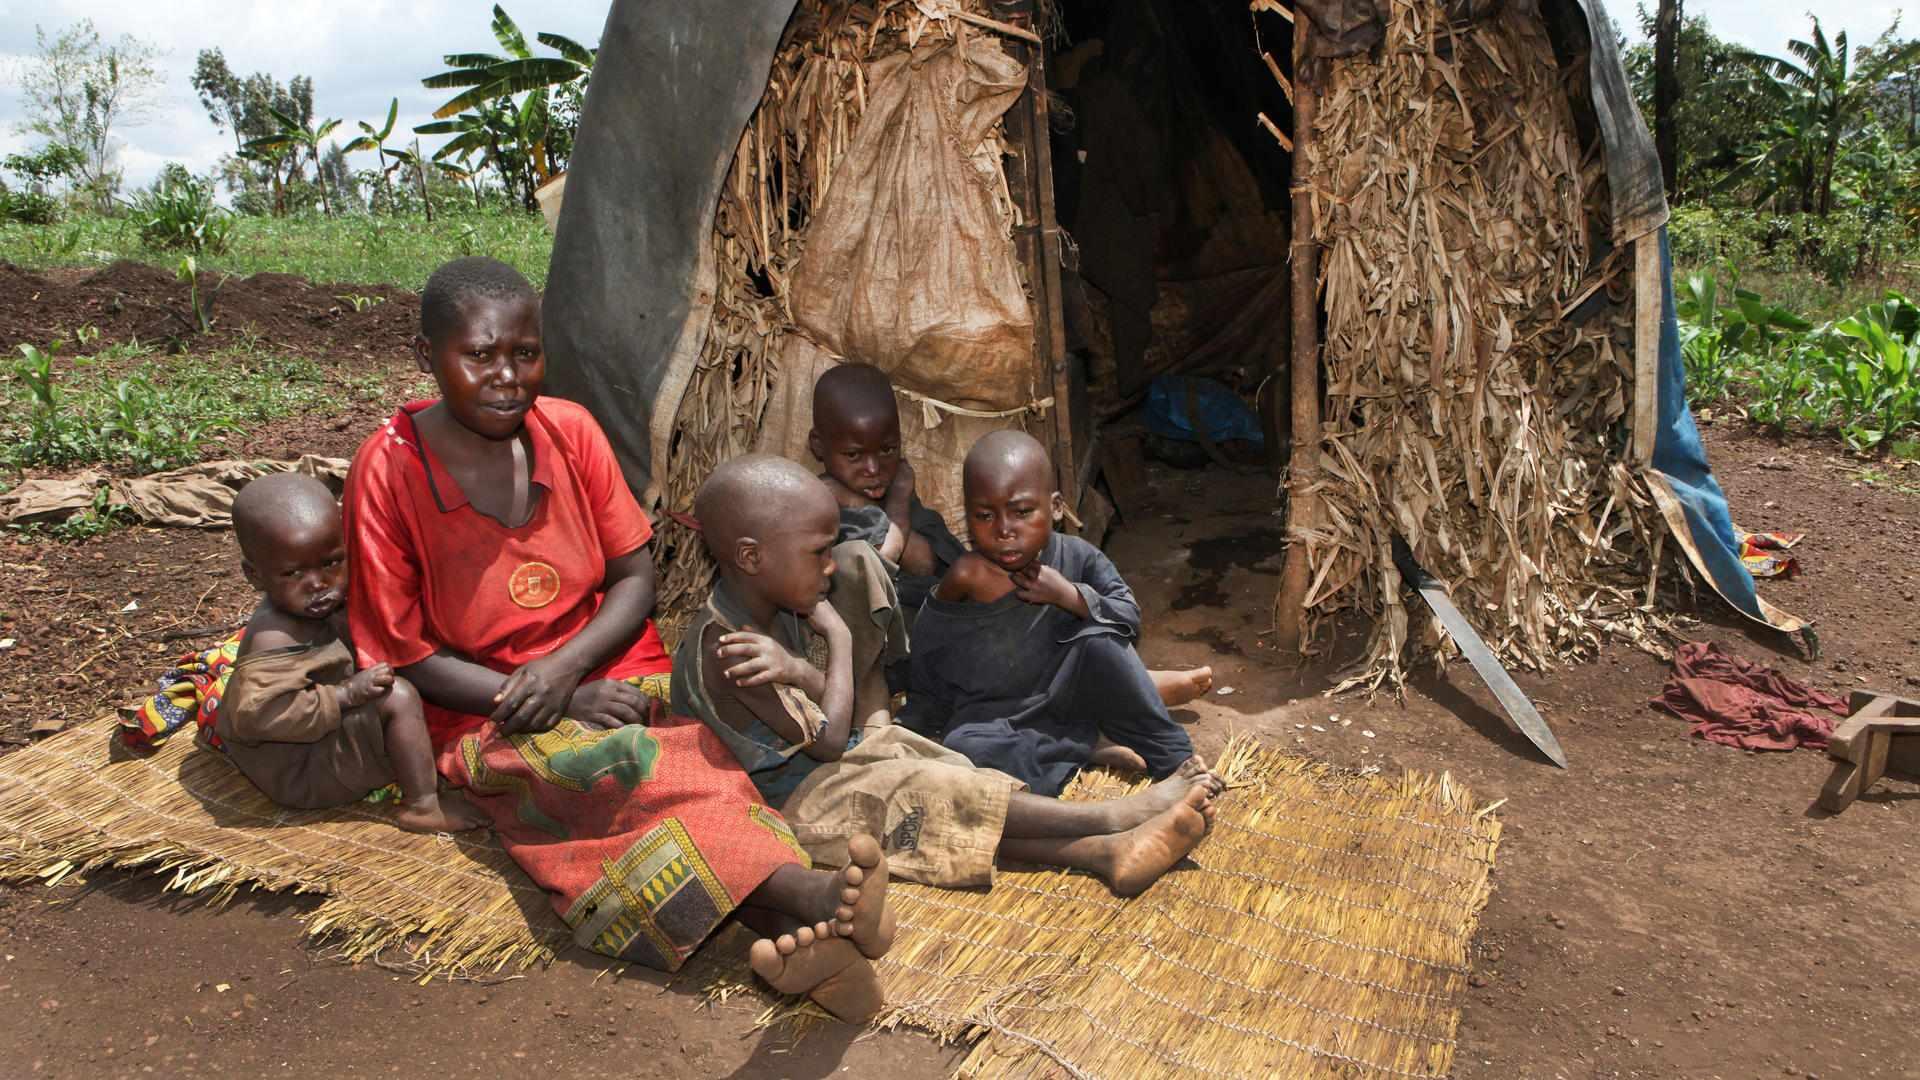 Eine Mutter sitzt mit ihren Kindern vor einer einfachen Hütte aus Holz